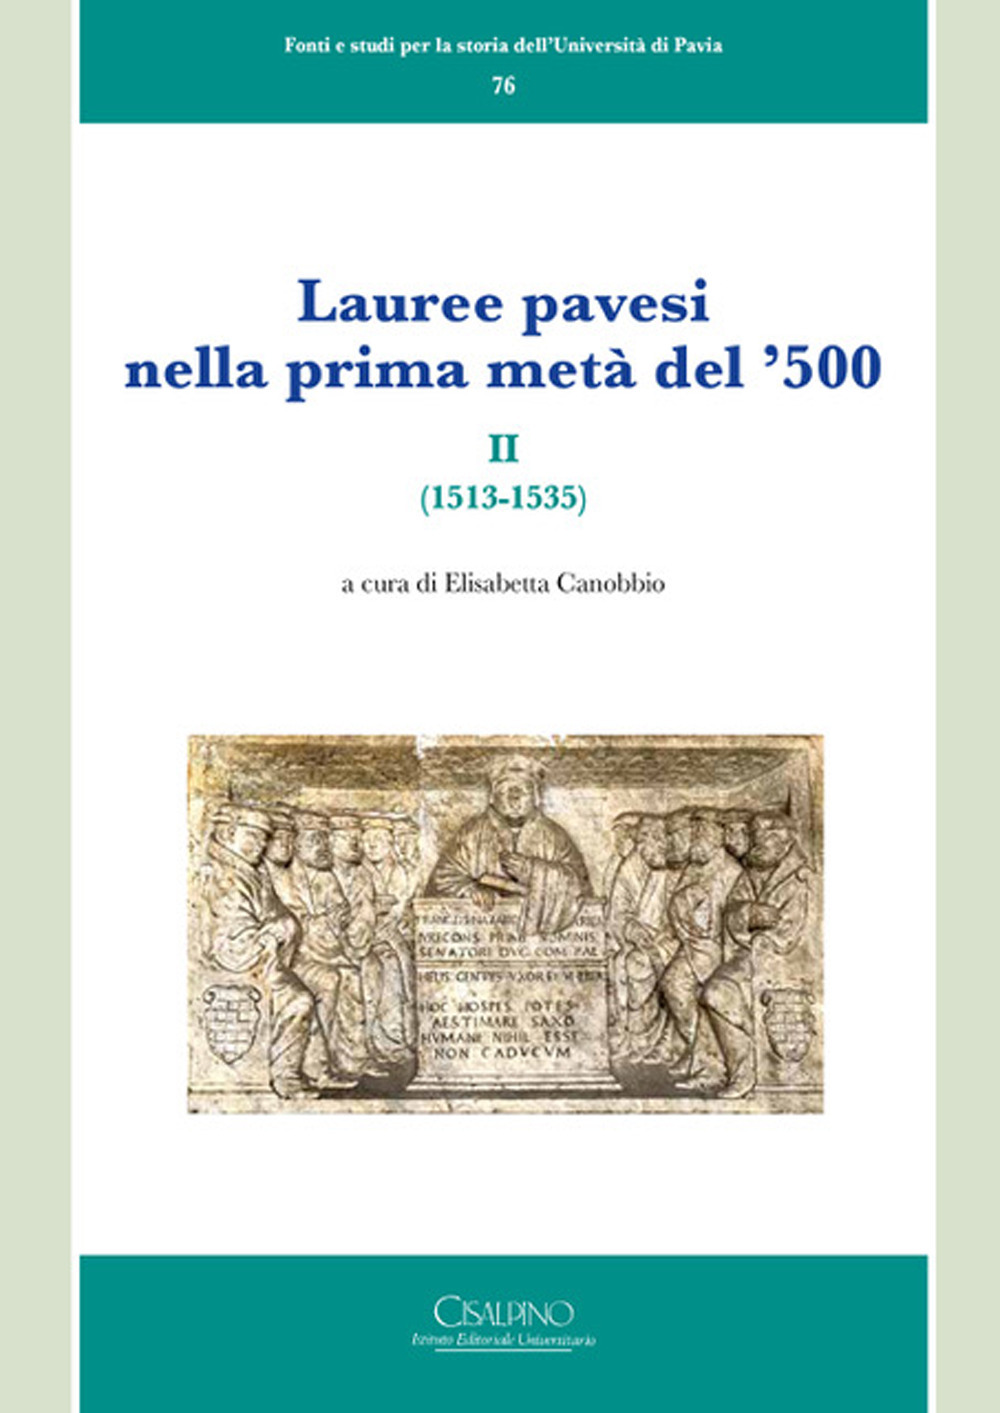 Lauree pavesi nella prima metà del '500. Vol. 2: (1513-1535)